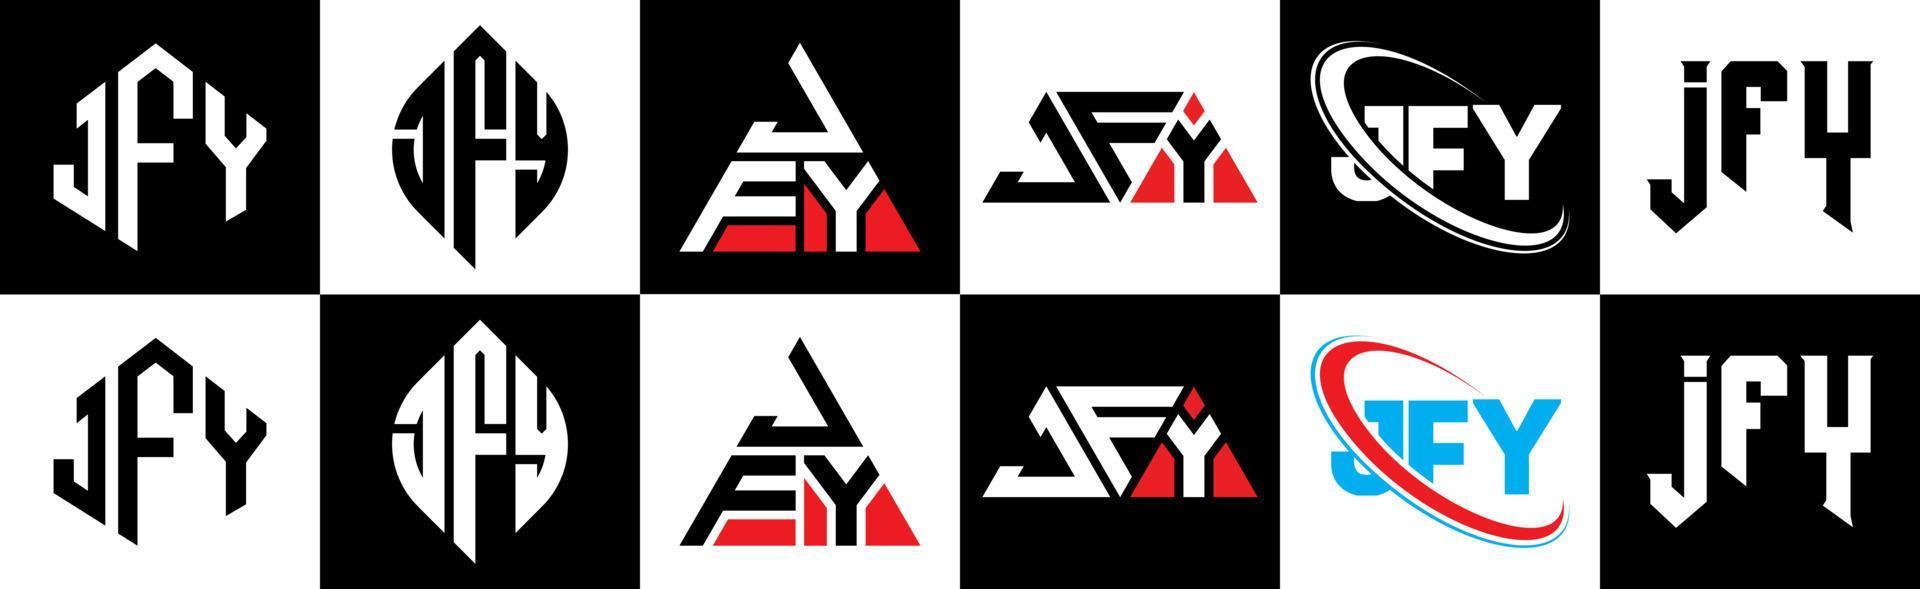 création de logo de lettre jfy en six styles. jfy polygone, cercle, triangle, hexagone, style plat et simple avec logo de lettre de variation de couleur noir et blanc dans un plan de travail. jfy logo minimaliste et classique vecteur